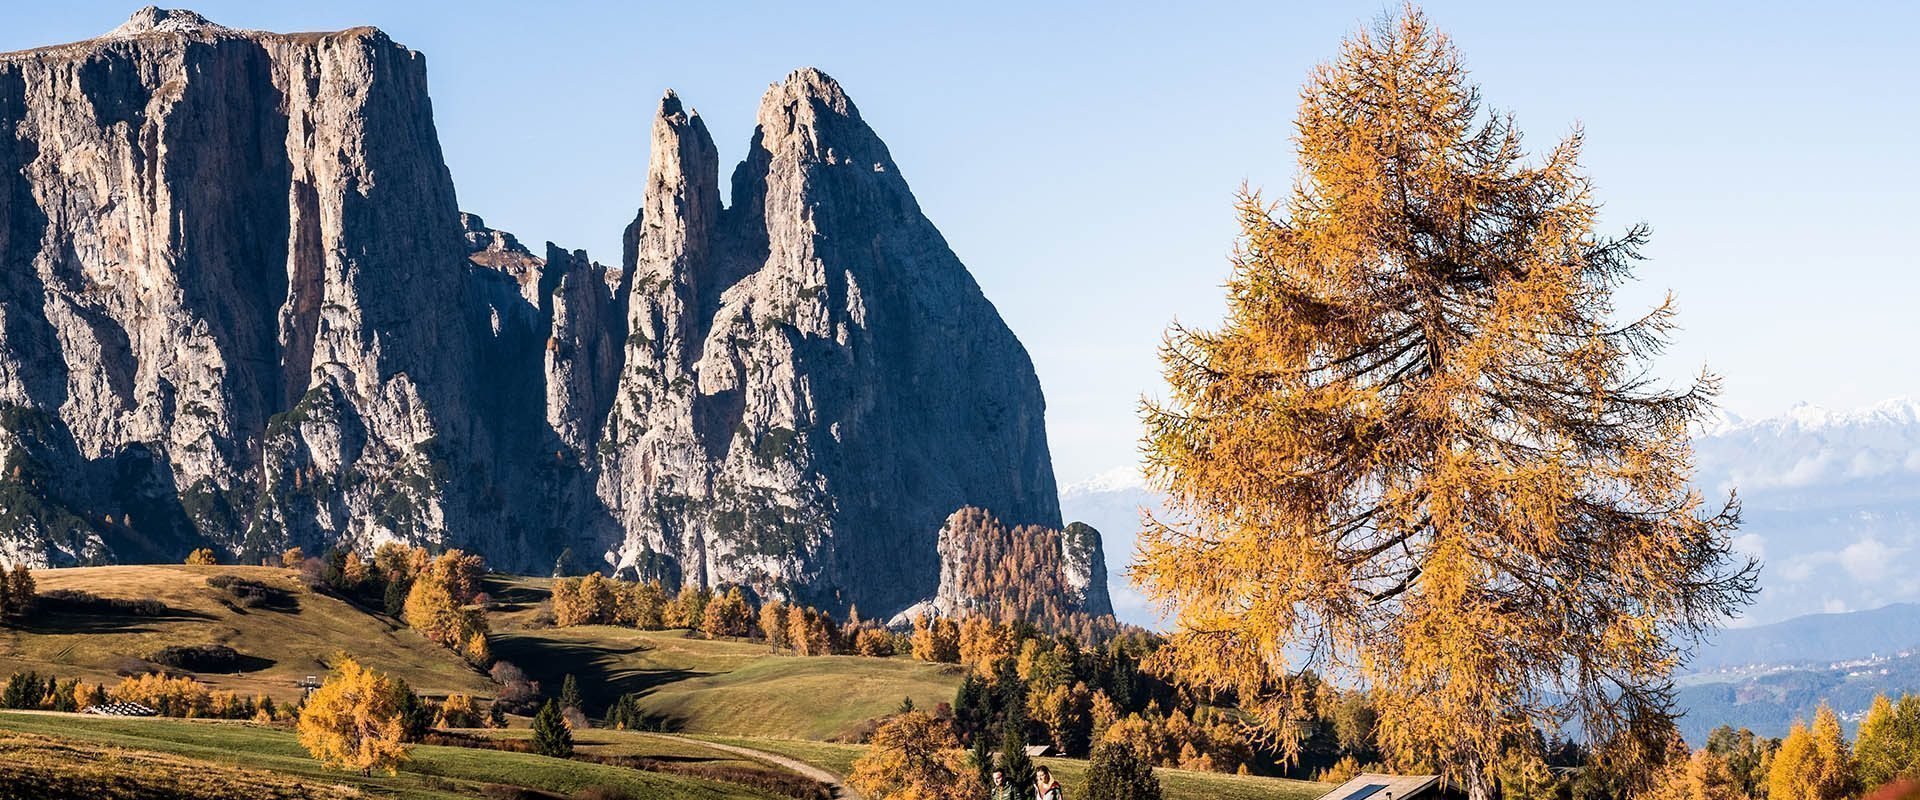 Herbsturlaub in Südtirol | Törggelen & traditioneller Almabtrieb